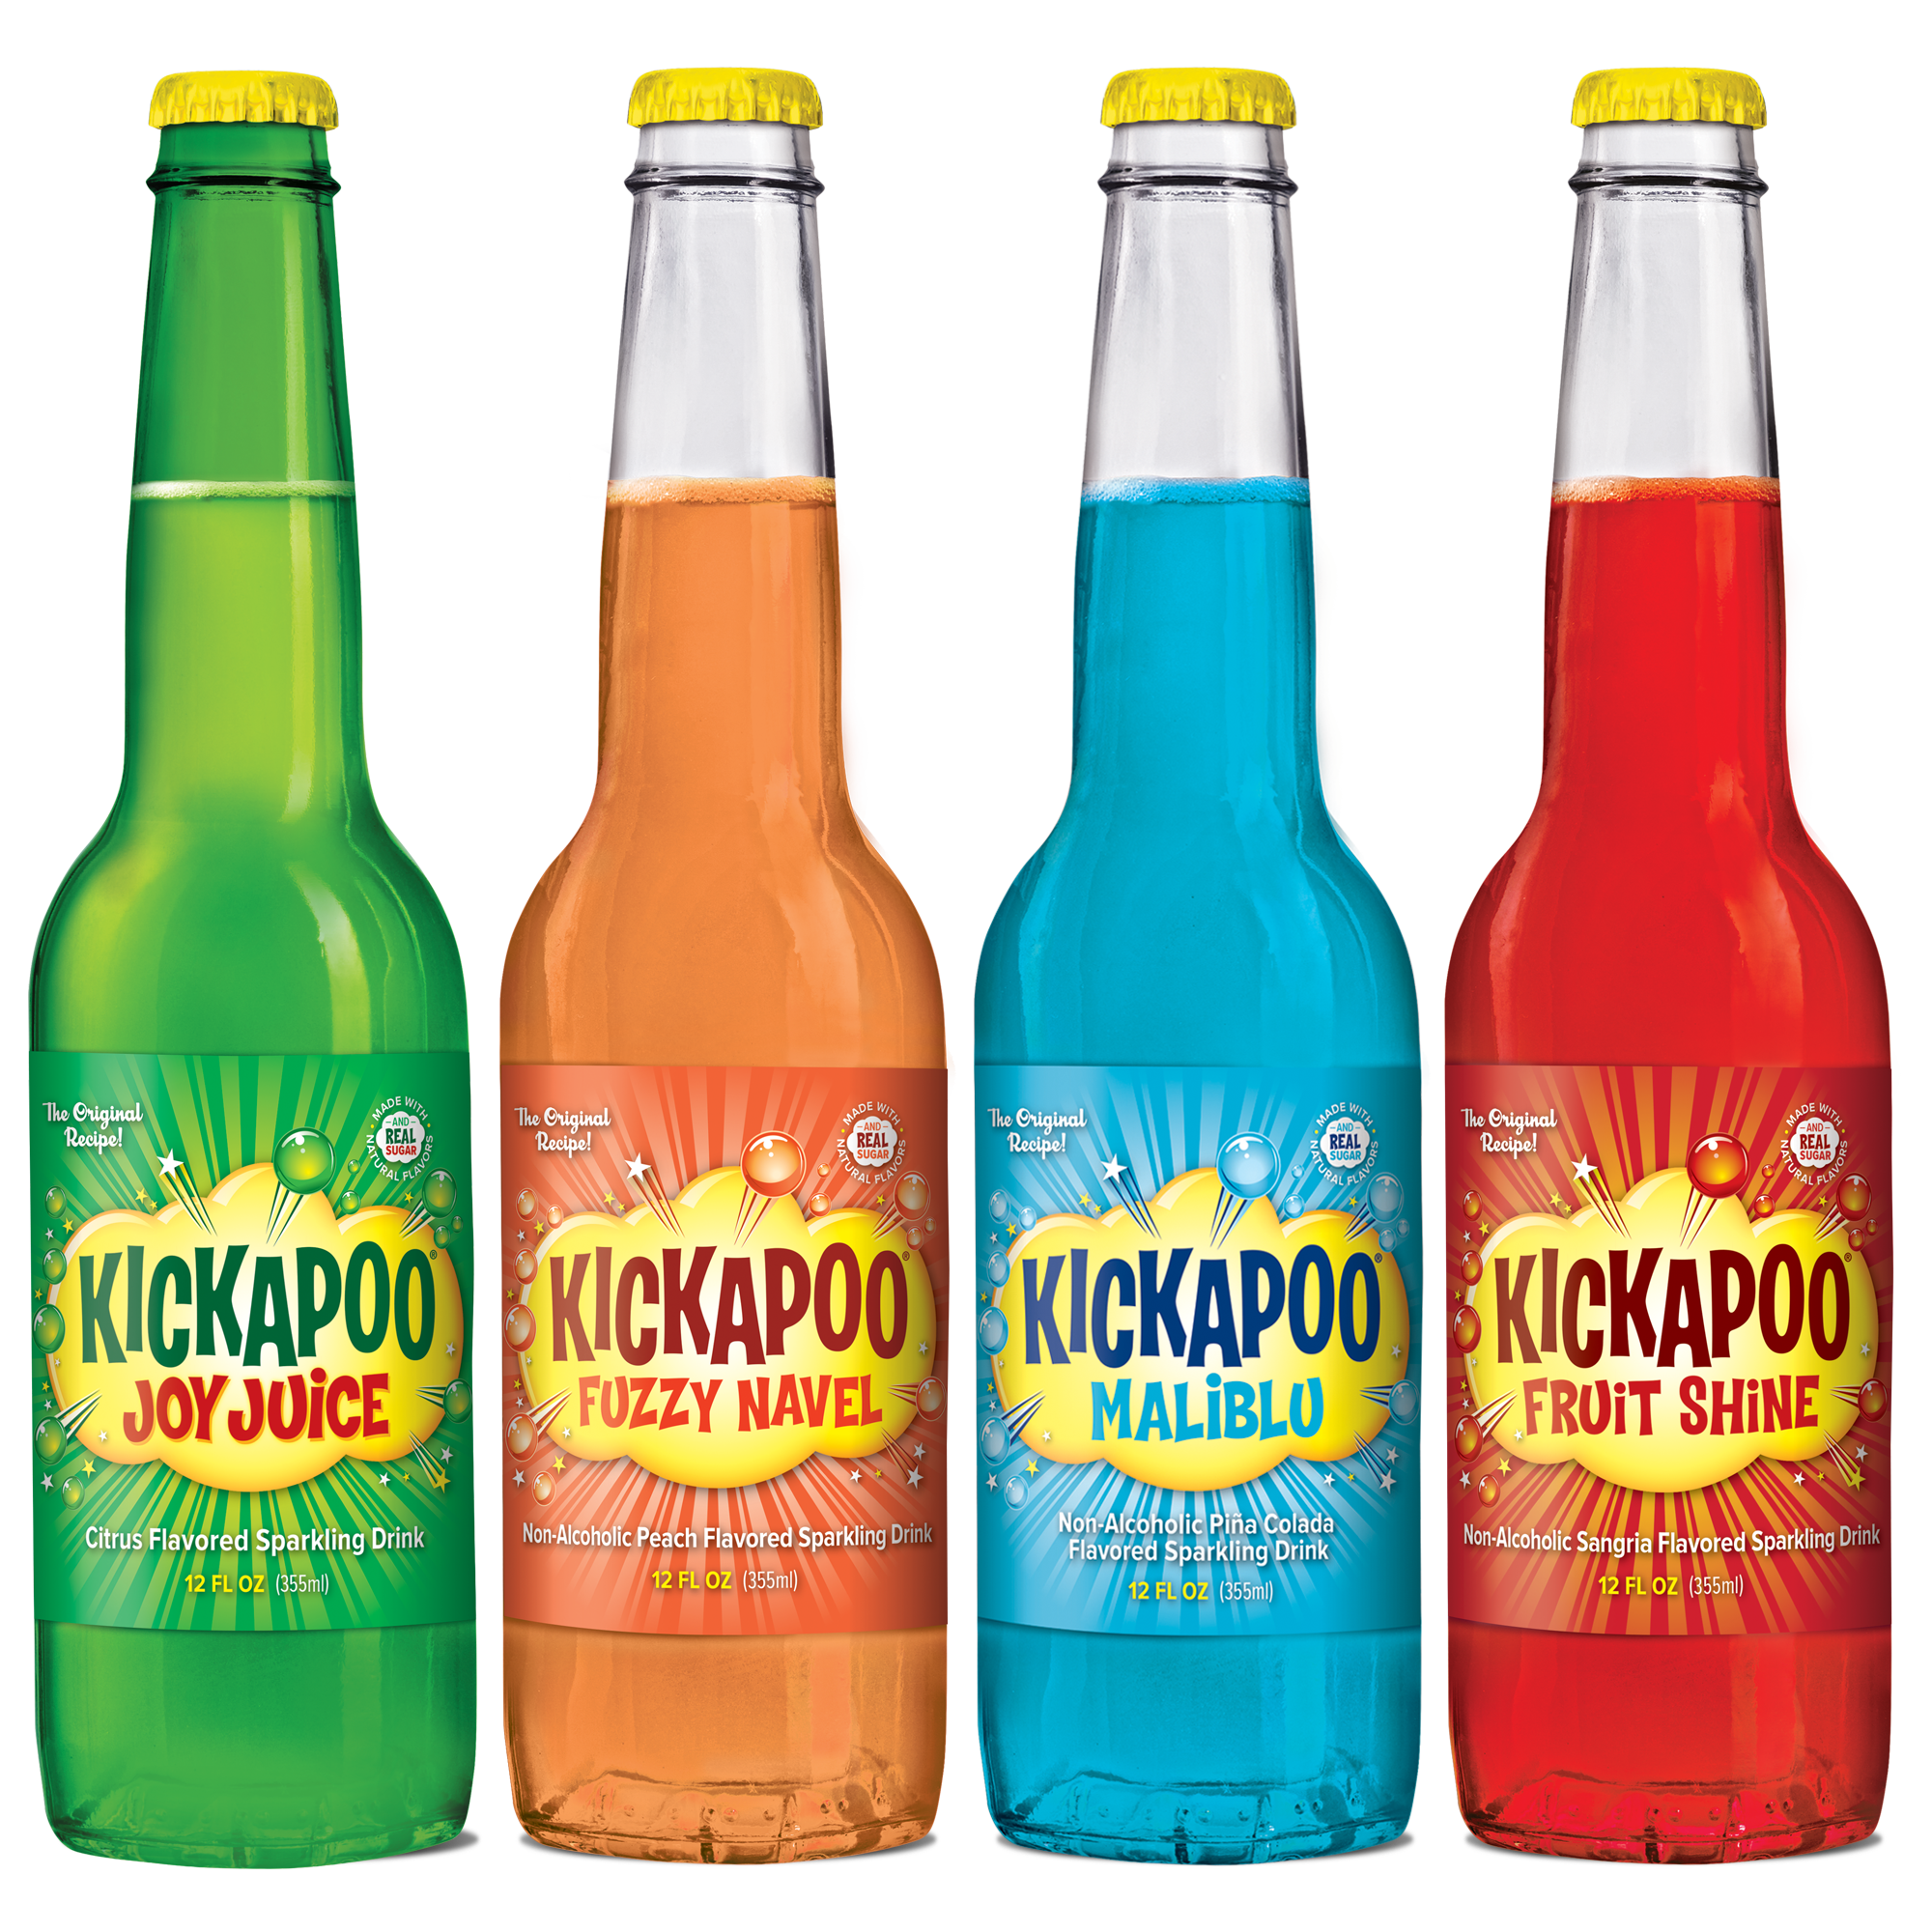 Kickapoo Joy Juice, Kickapoo Fuzzy Navel, Kickapoo Maliblu, Kickapoo Fruit Shine